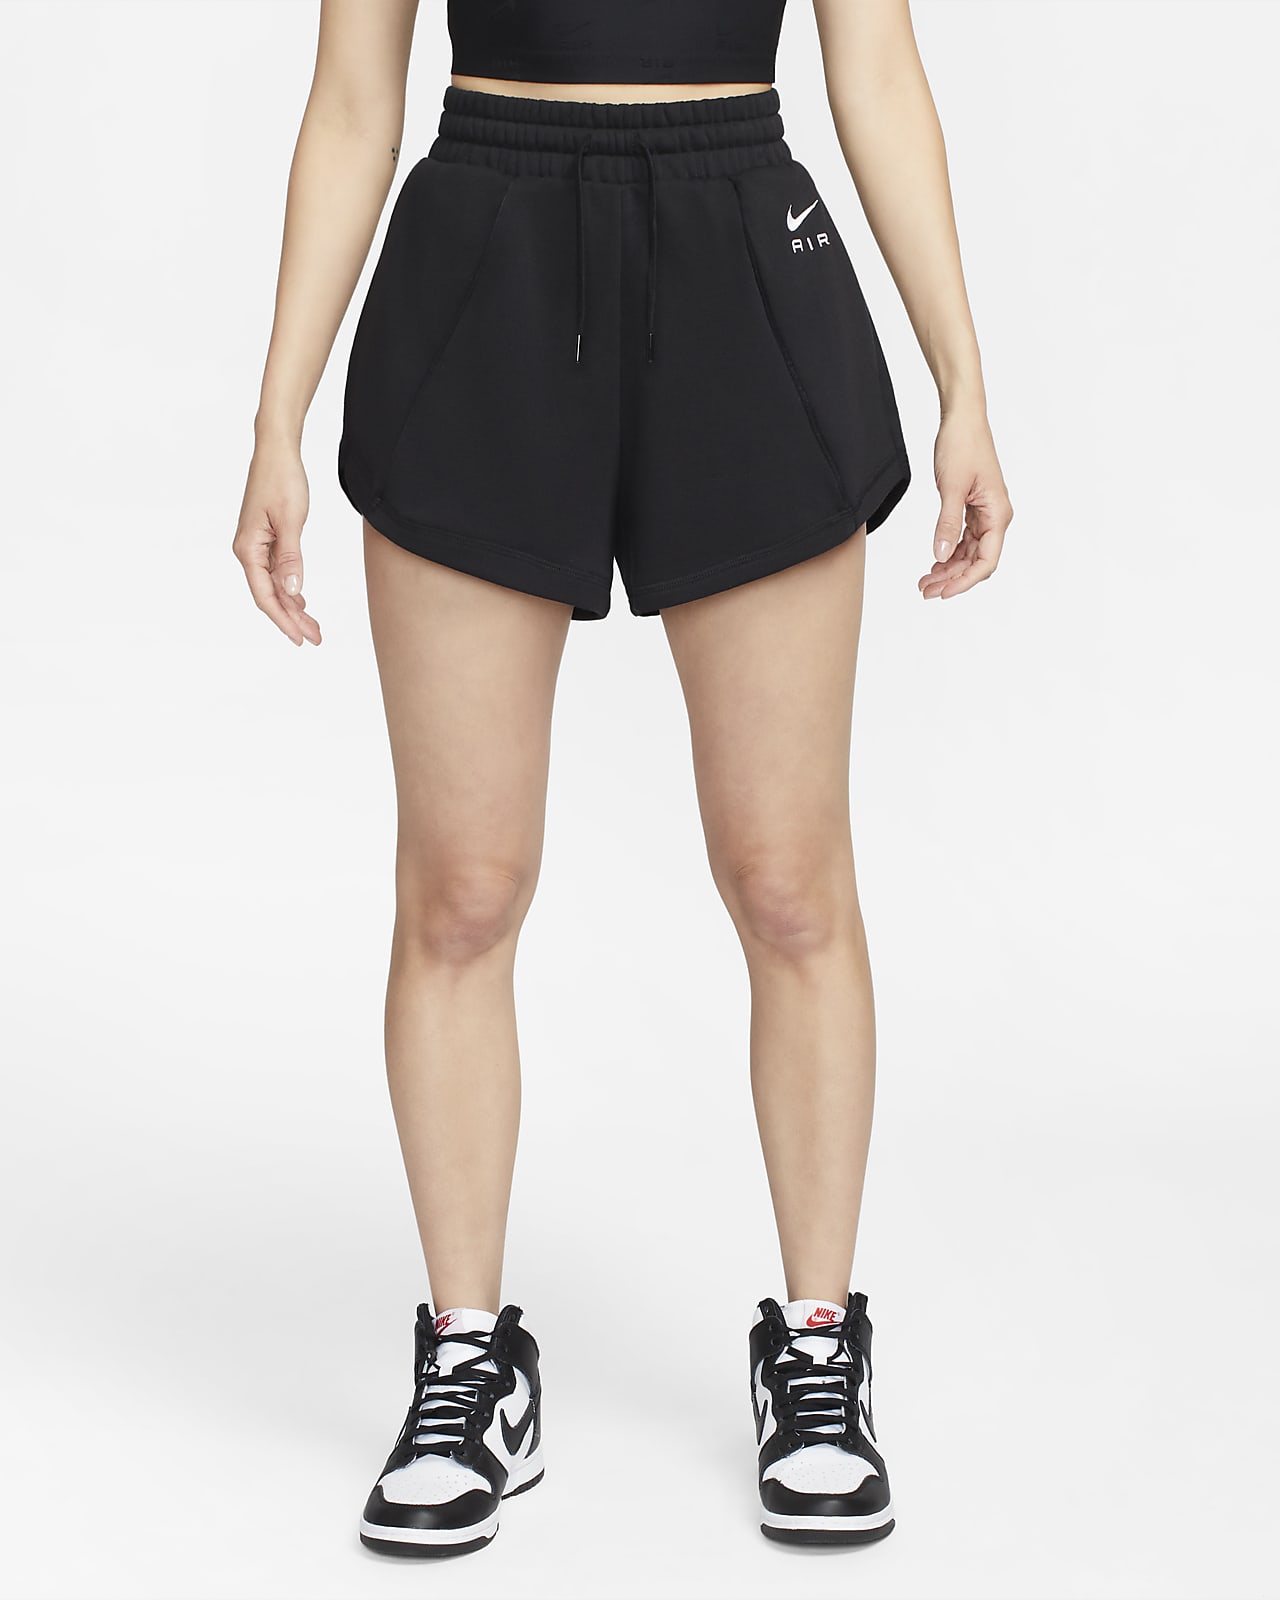 Nike Air Women's High-Rise Fleece Shorts. Nike